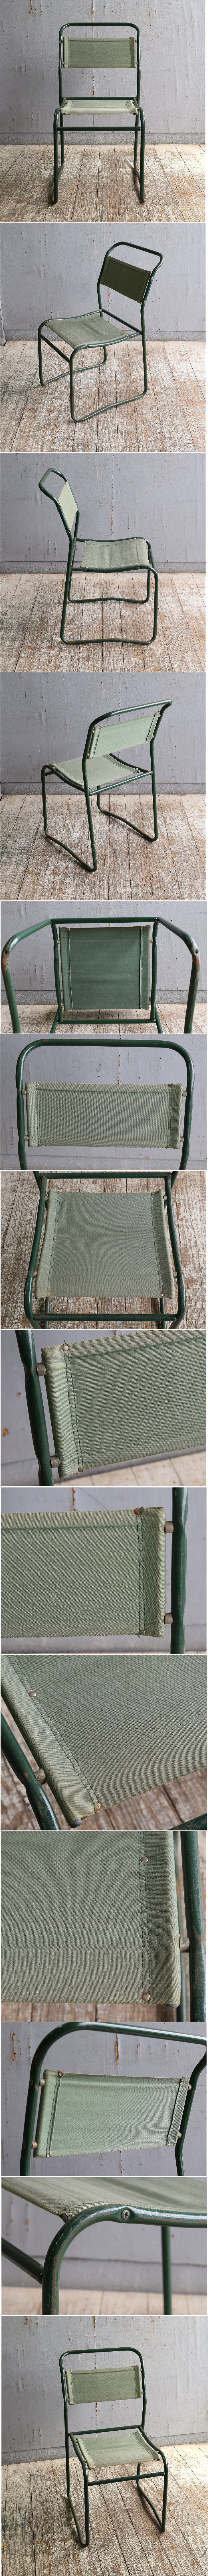 イギリス アンティーク カフェチェア スタッキングチェア 椅子 11041